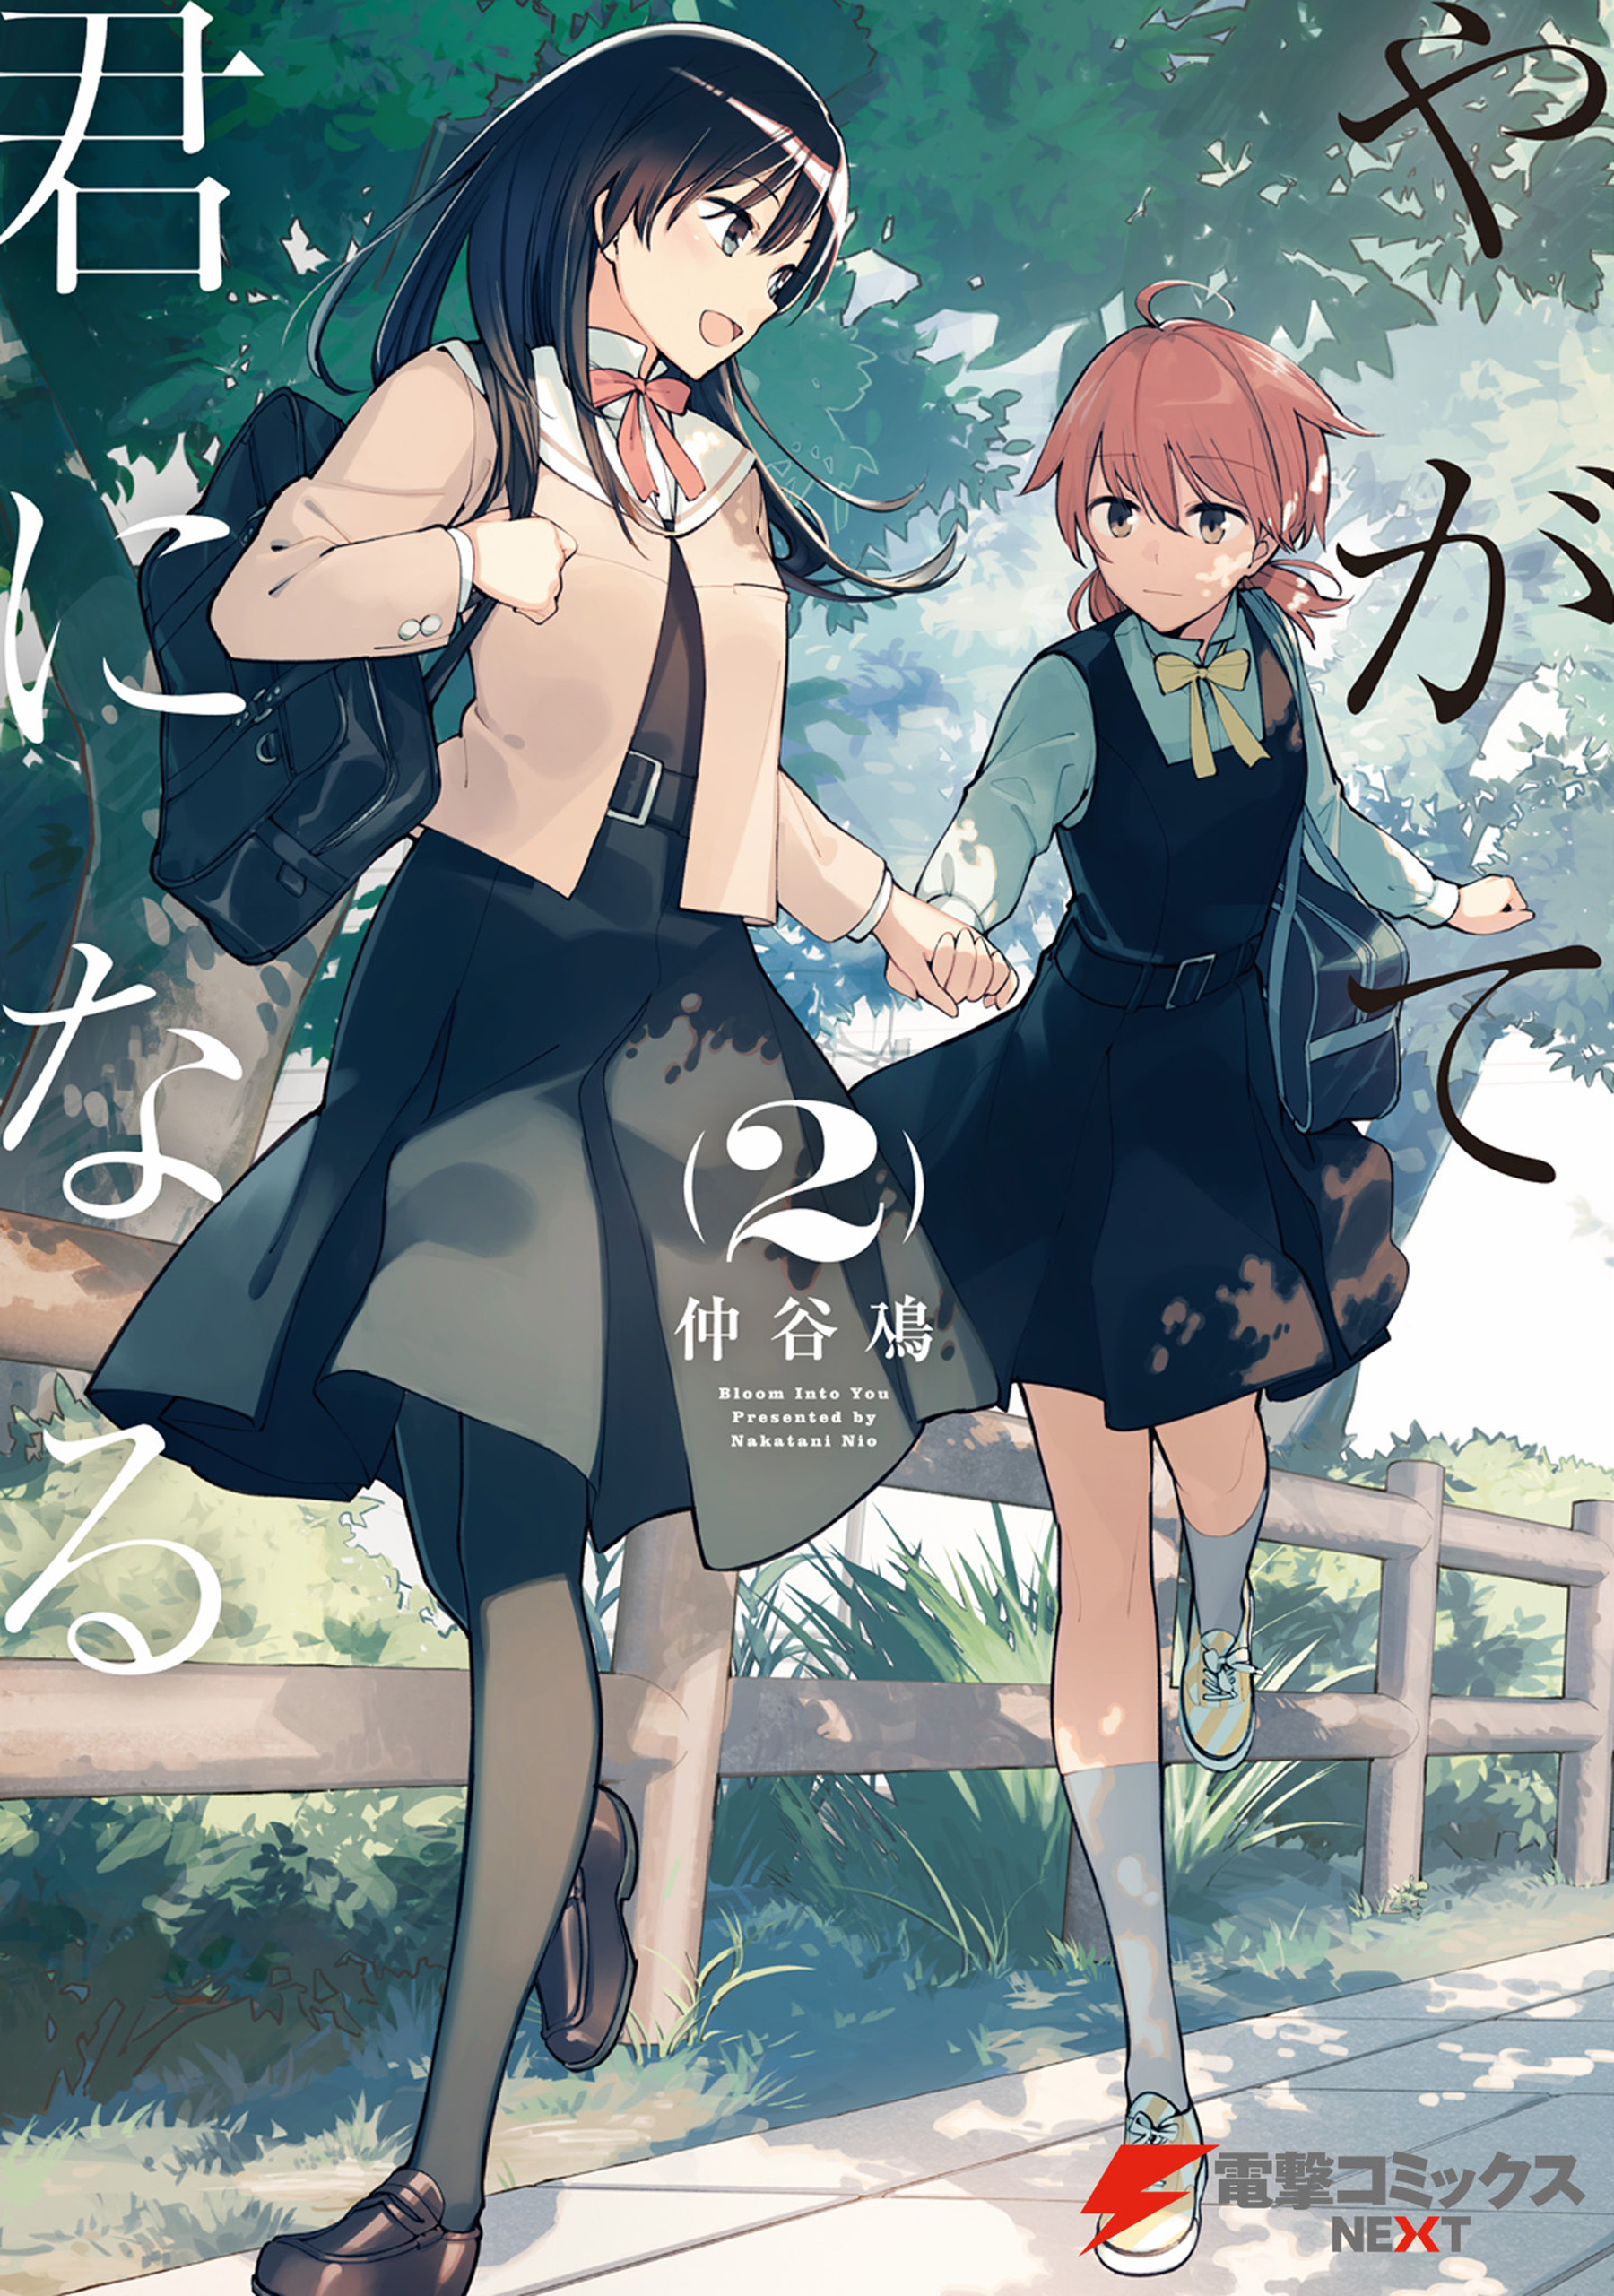 Manga, Bloom Into You (Yagate Kimi ni Naru)